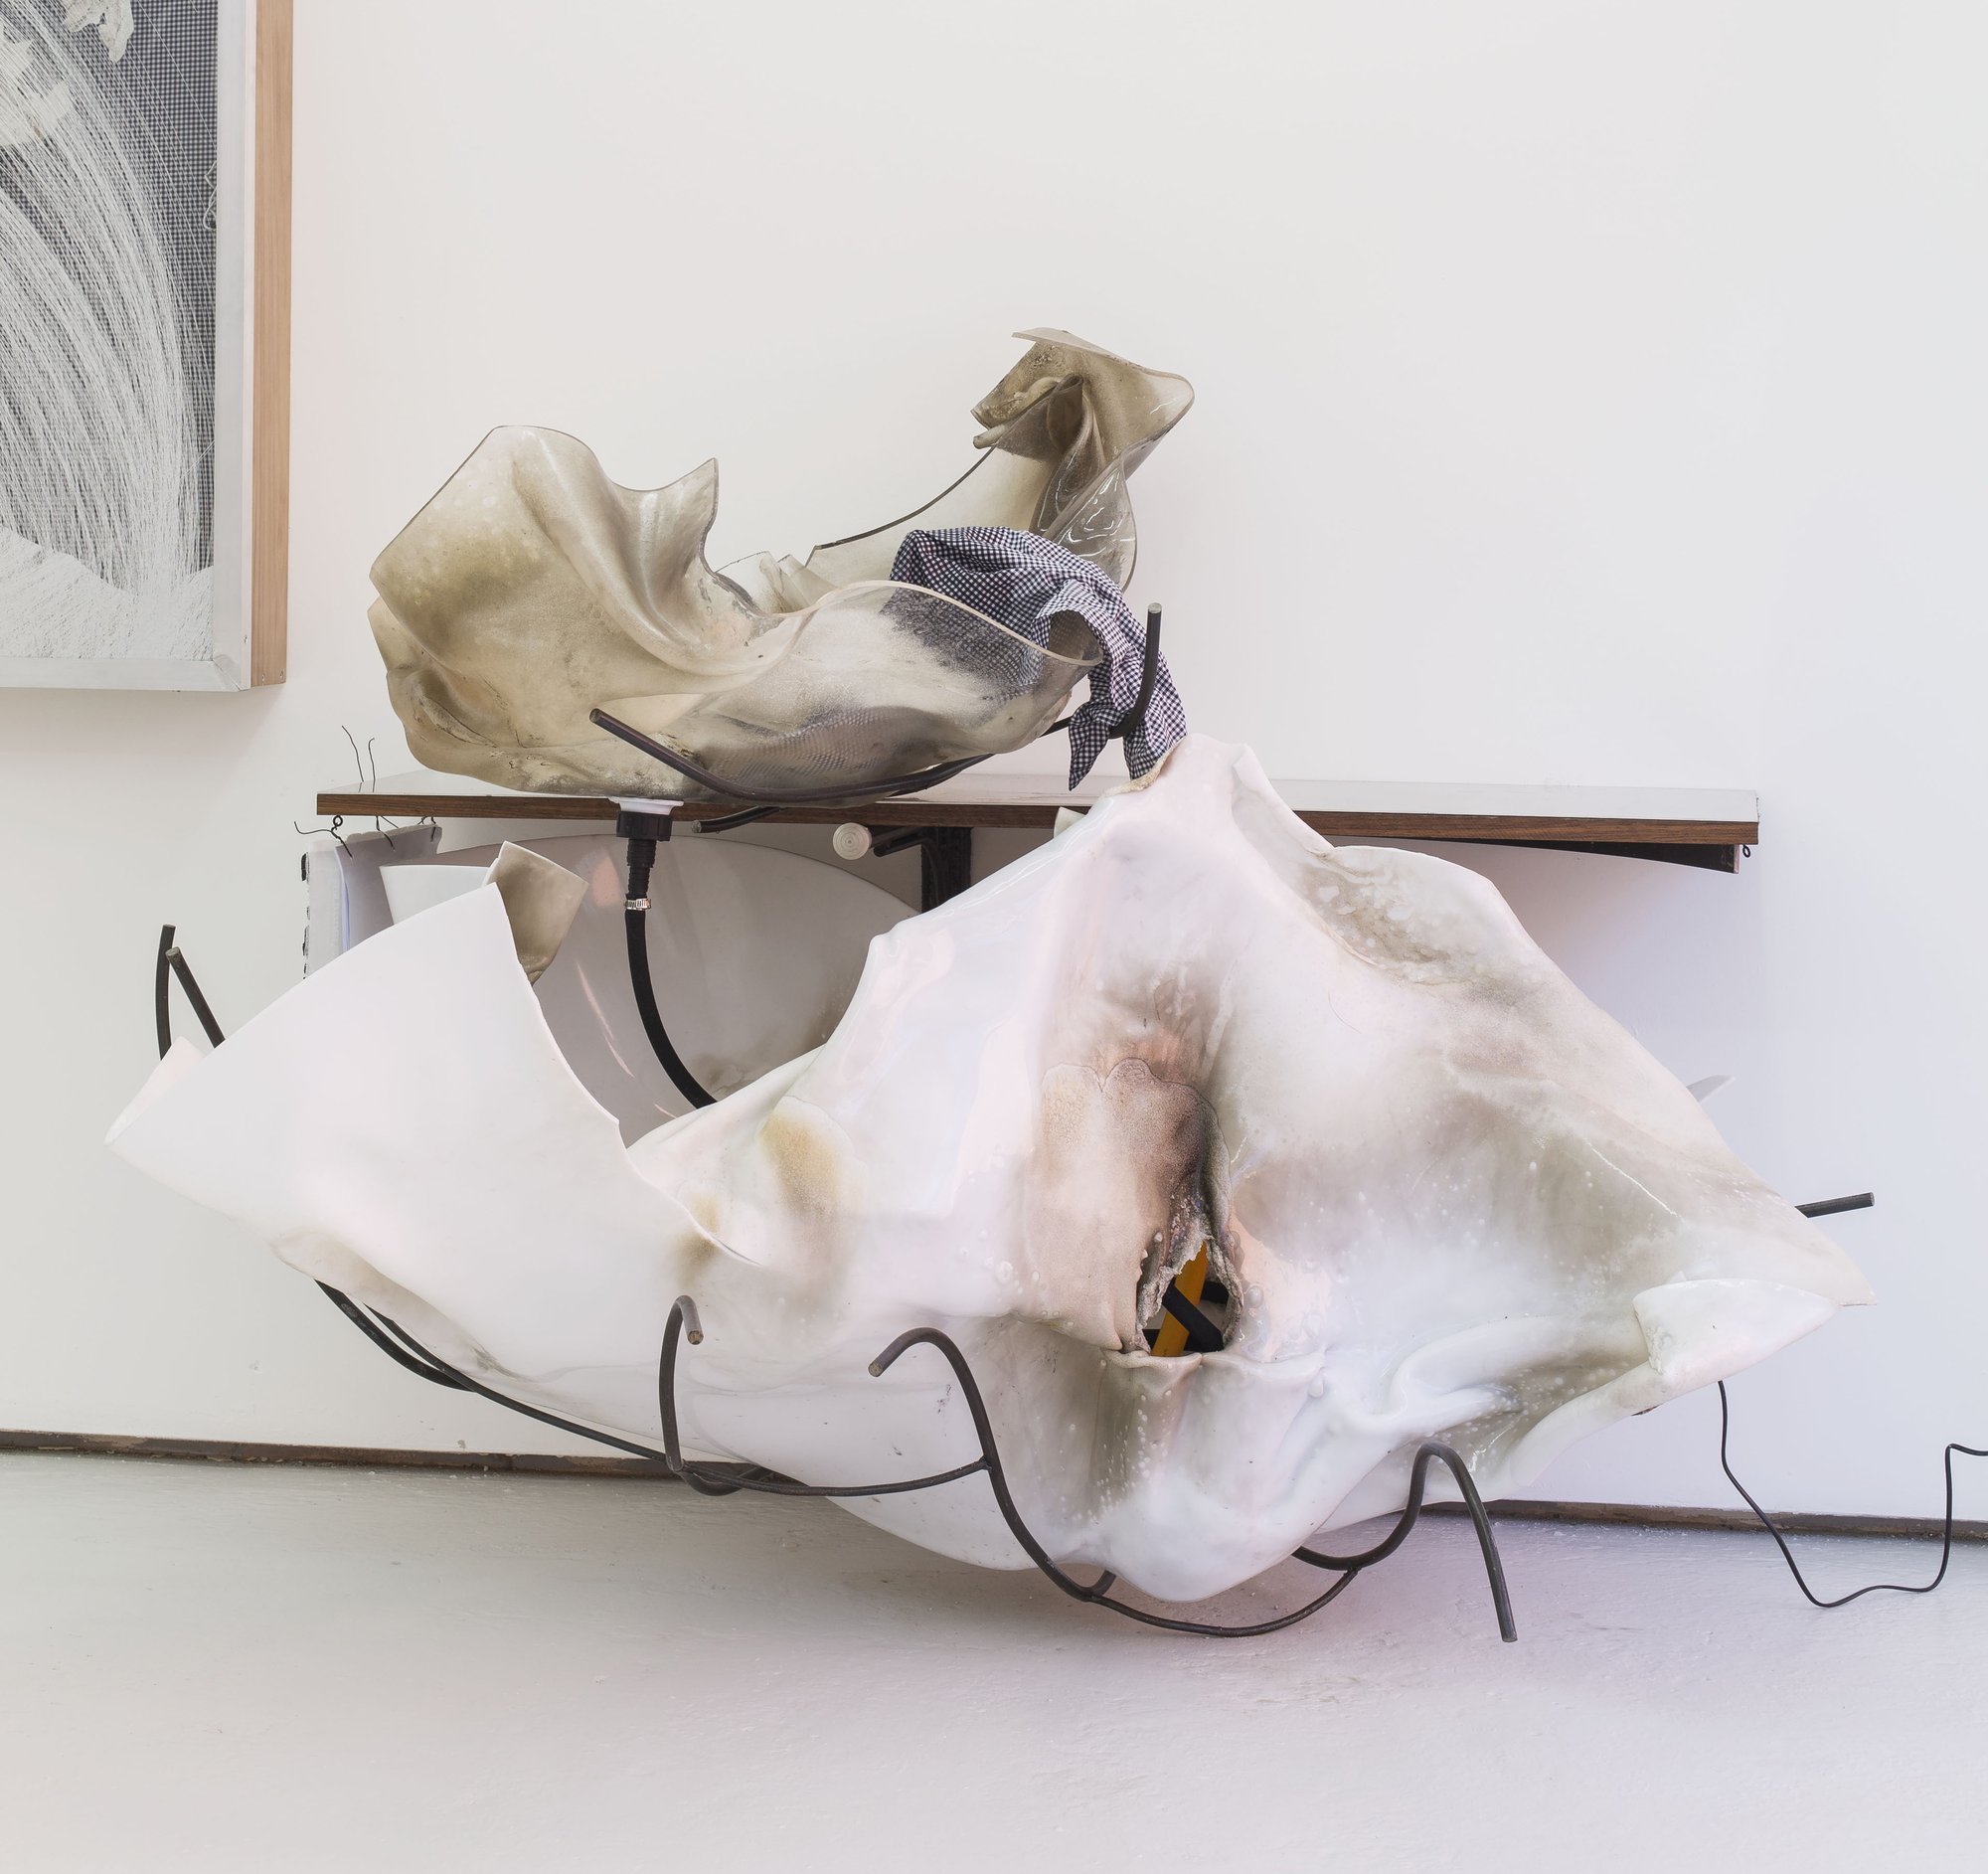 David Douard, S’, plastic, wood, metal, fabric, water pump, 130 x 155 x 110 cm (51 1/8 x 61 x 43 1/4 in), 2015